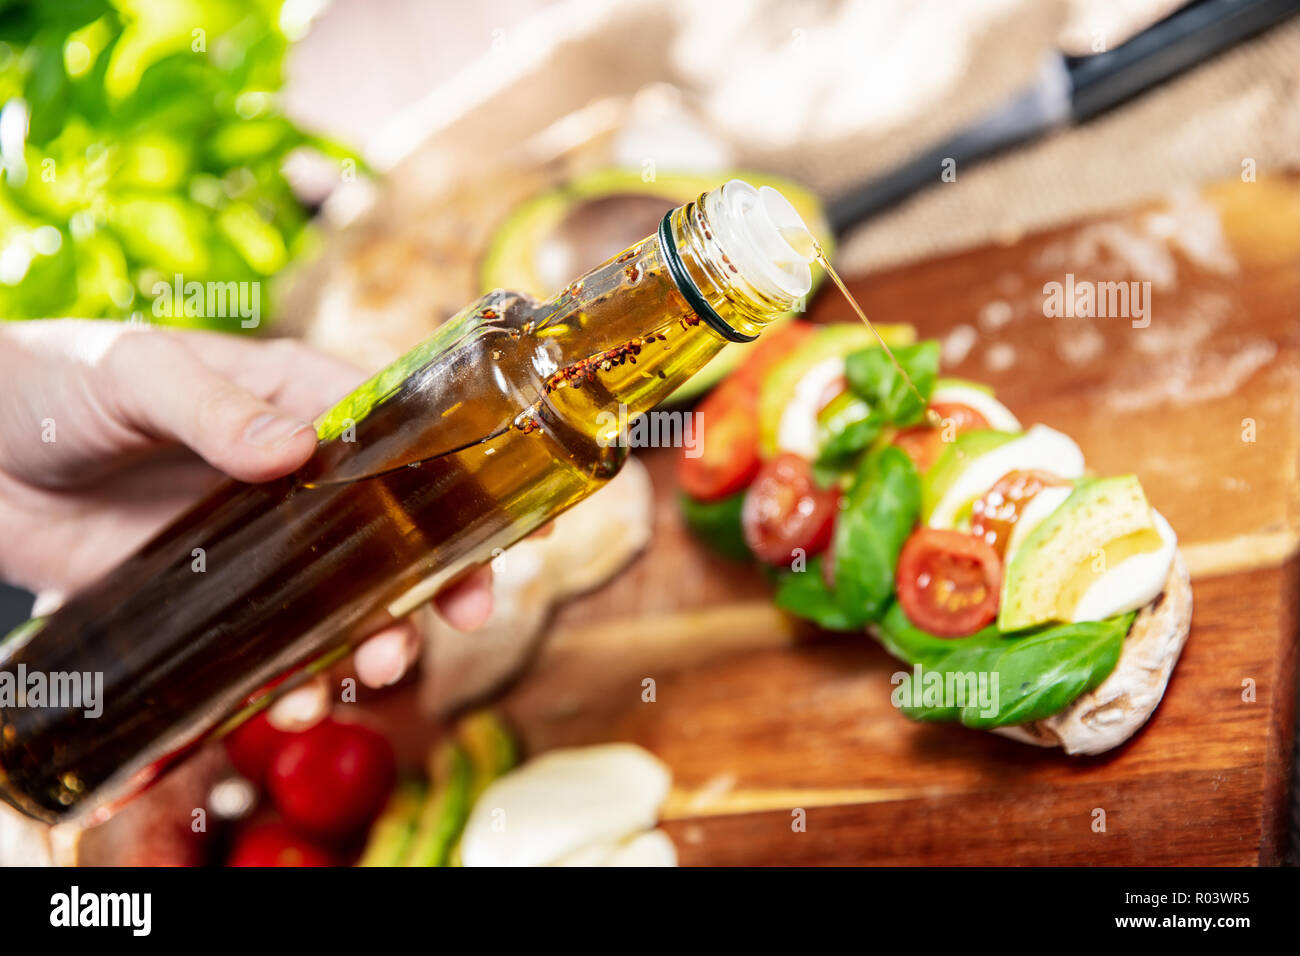 La main est de verser l'huile d'olive au basilic sur le sandwich fait de pain ciabatta, tomates, avocat, mozzarella et basilic frais. L'orientation horizontale de pho Banque D'Images